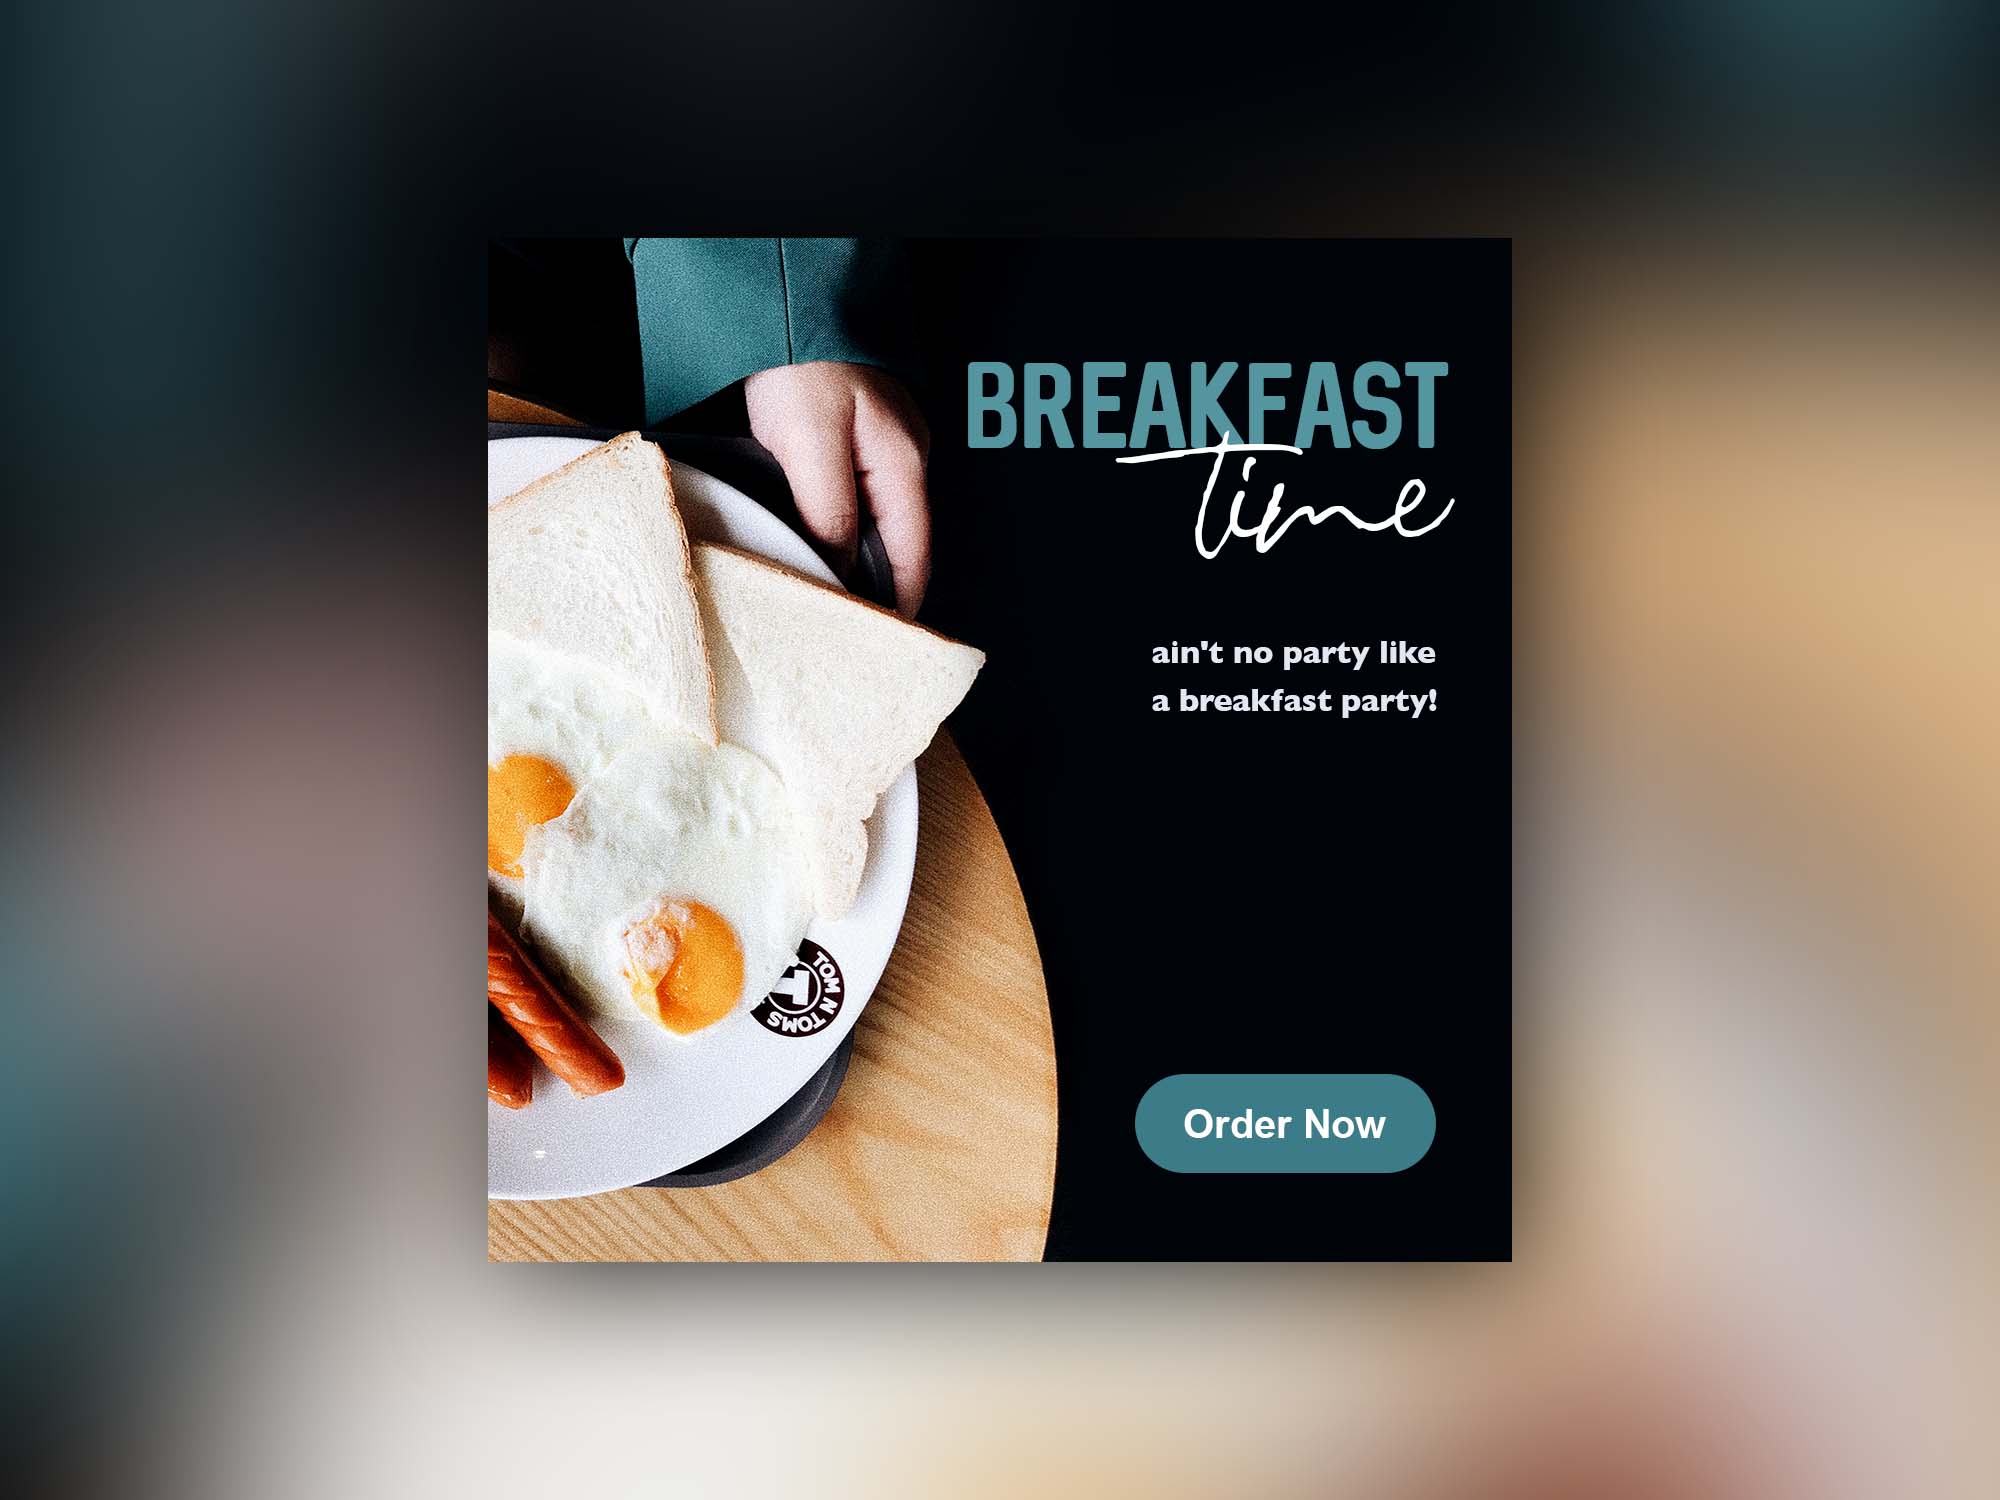 Бесплатный завтрак время веб-баннера